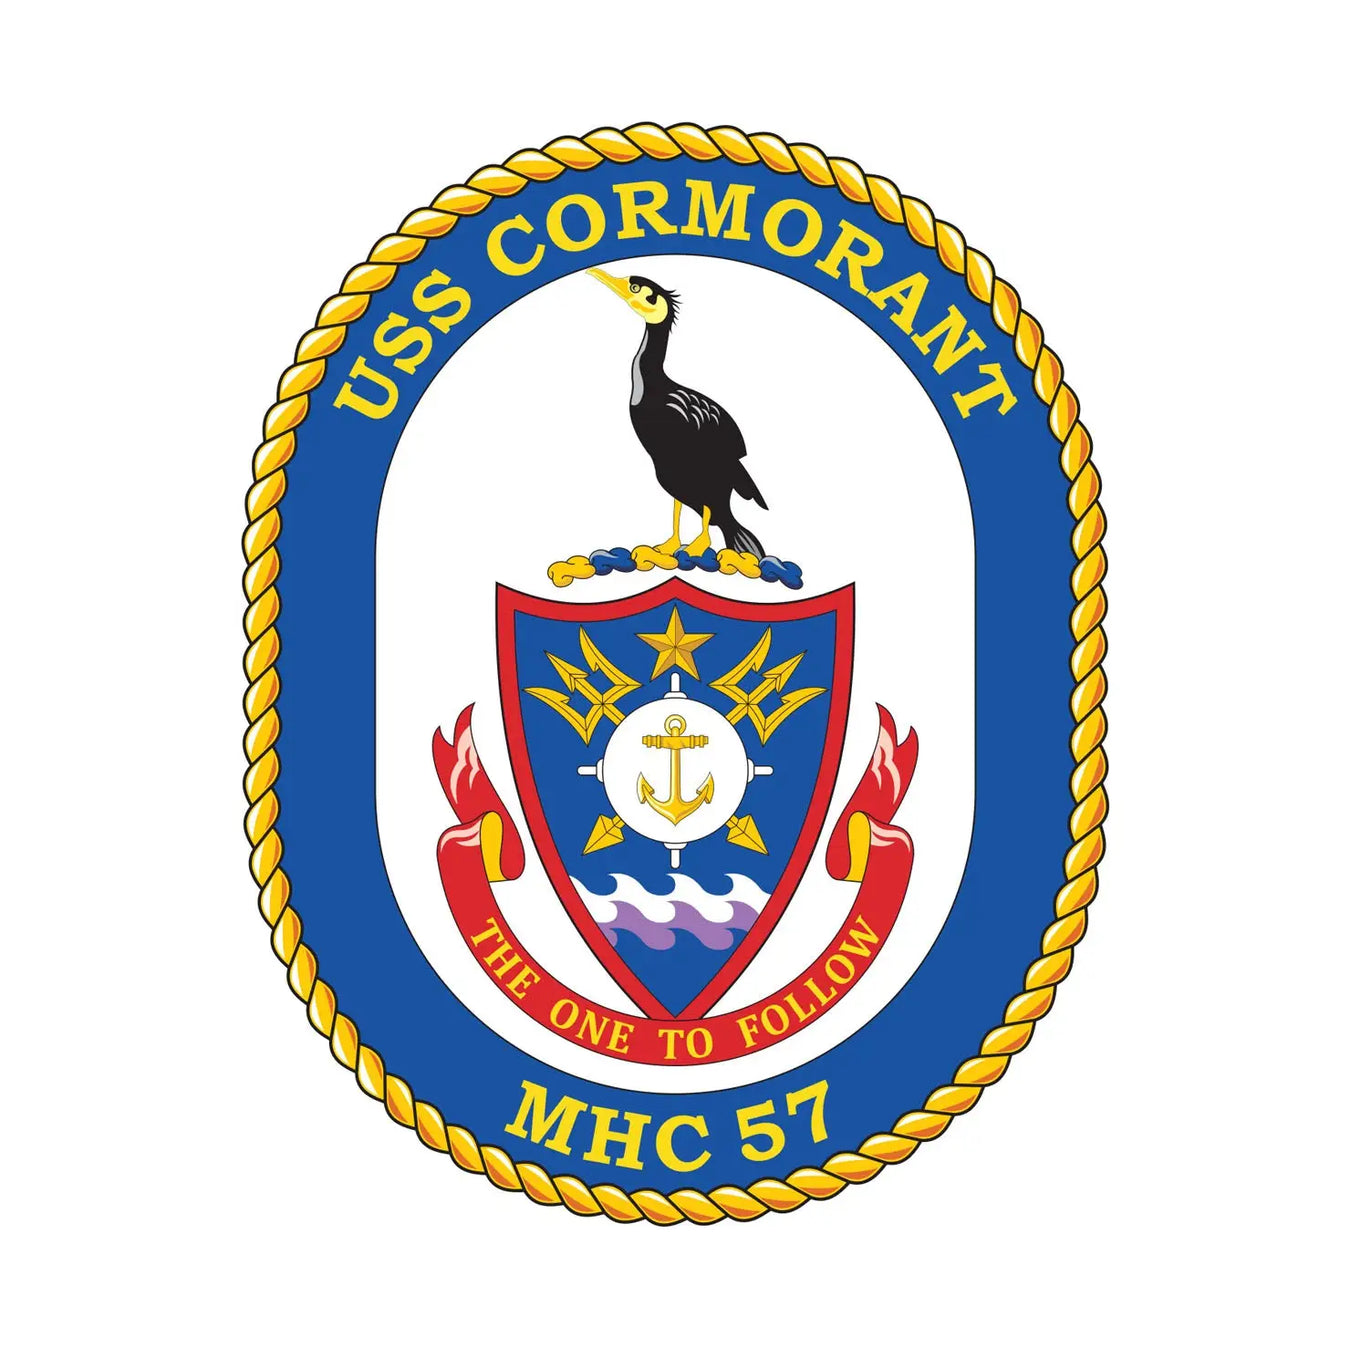 USS Cormorant (MHC-57)